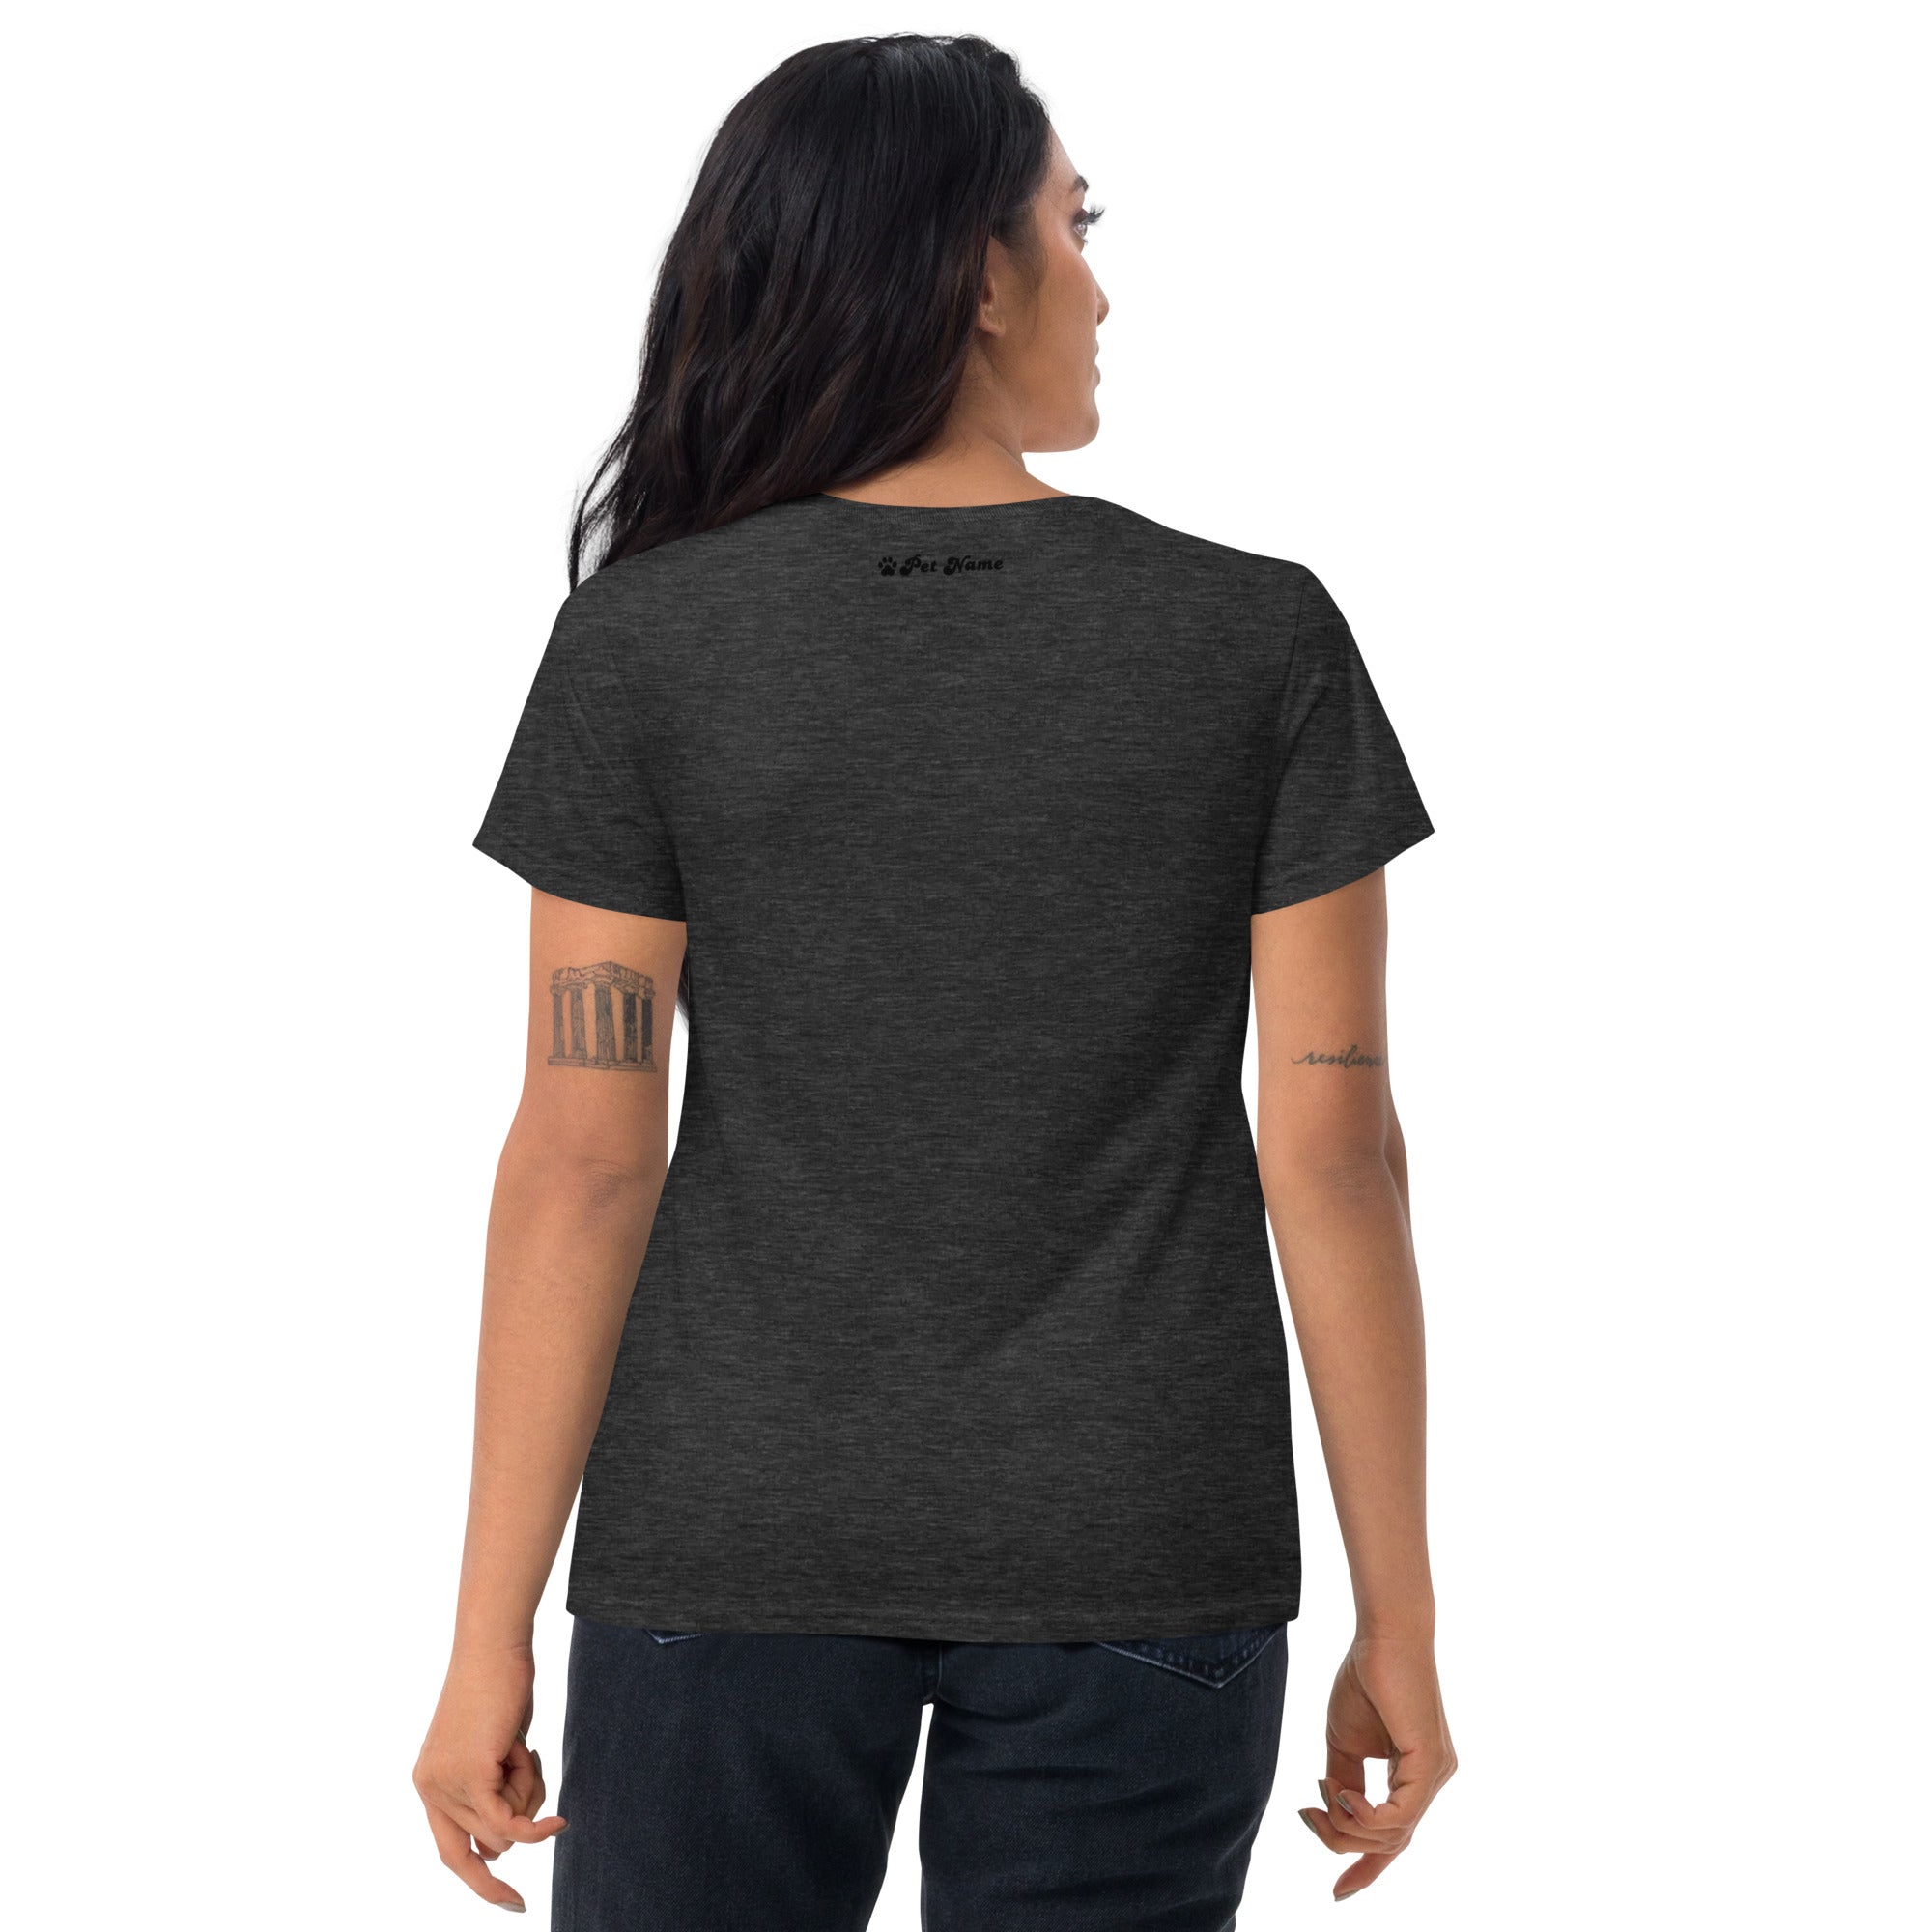 Golden Retriever Women's short sleeve t-shirt